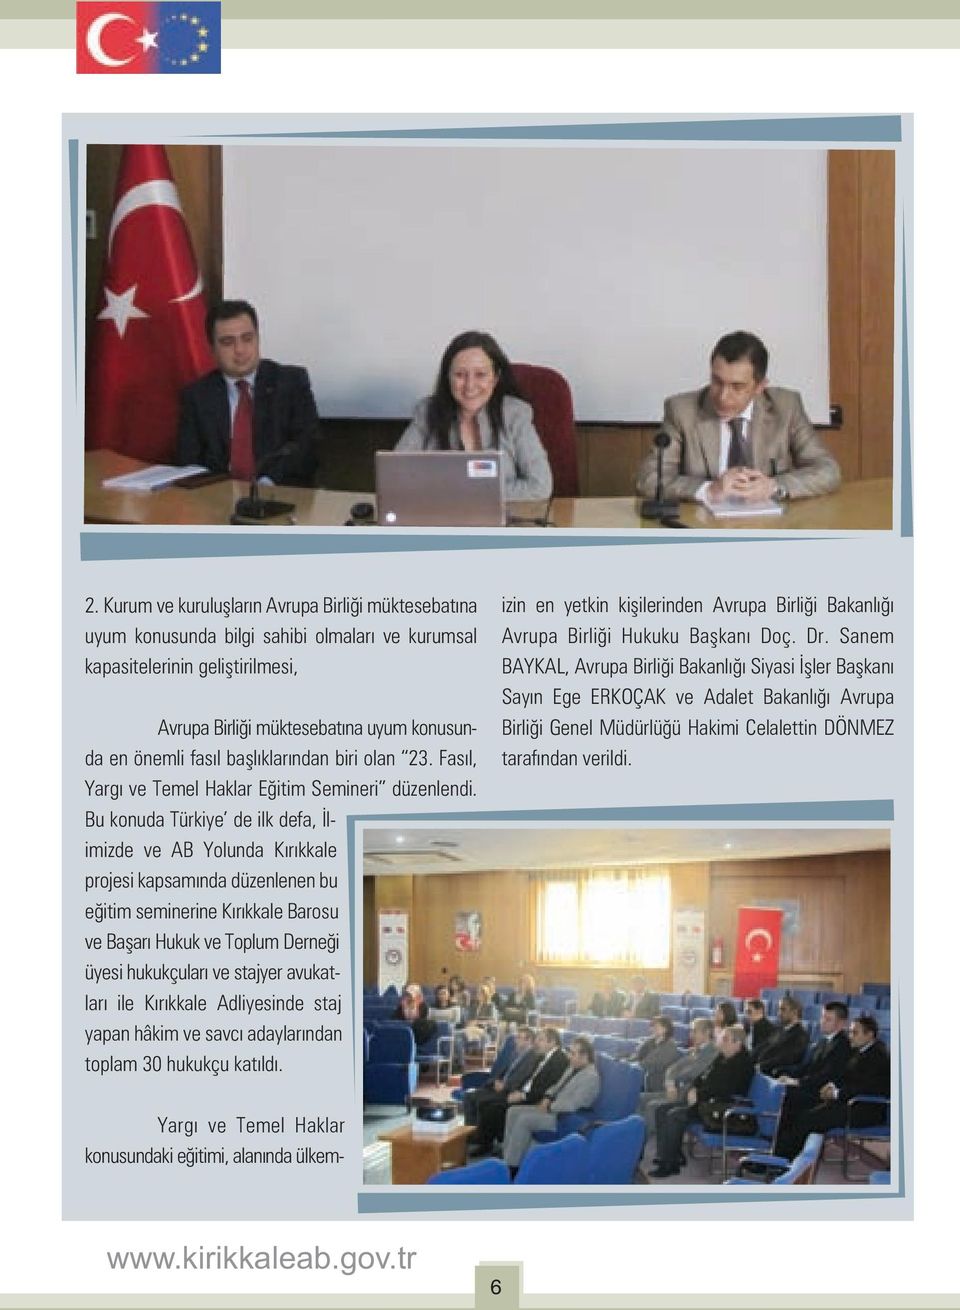 Bu konuda Türkiye de ilk defa, İlimizde ve AB Yolunda Kırıkkale projesi kapsamında düzenlenen bu eğitim seminerine Kırıkkale Barosu ve Başarı Hukuk ve Toplum Derneği üyesi hukukçuları ve stajyer